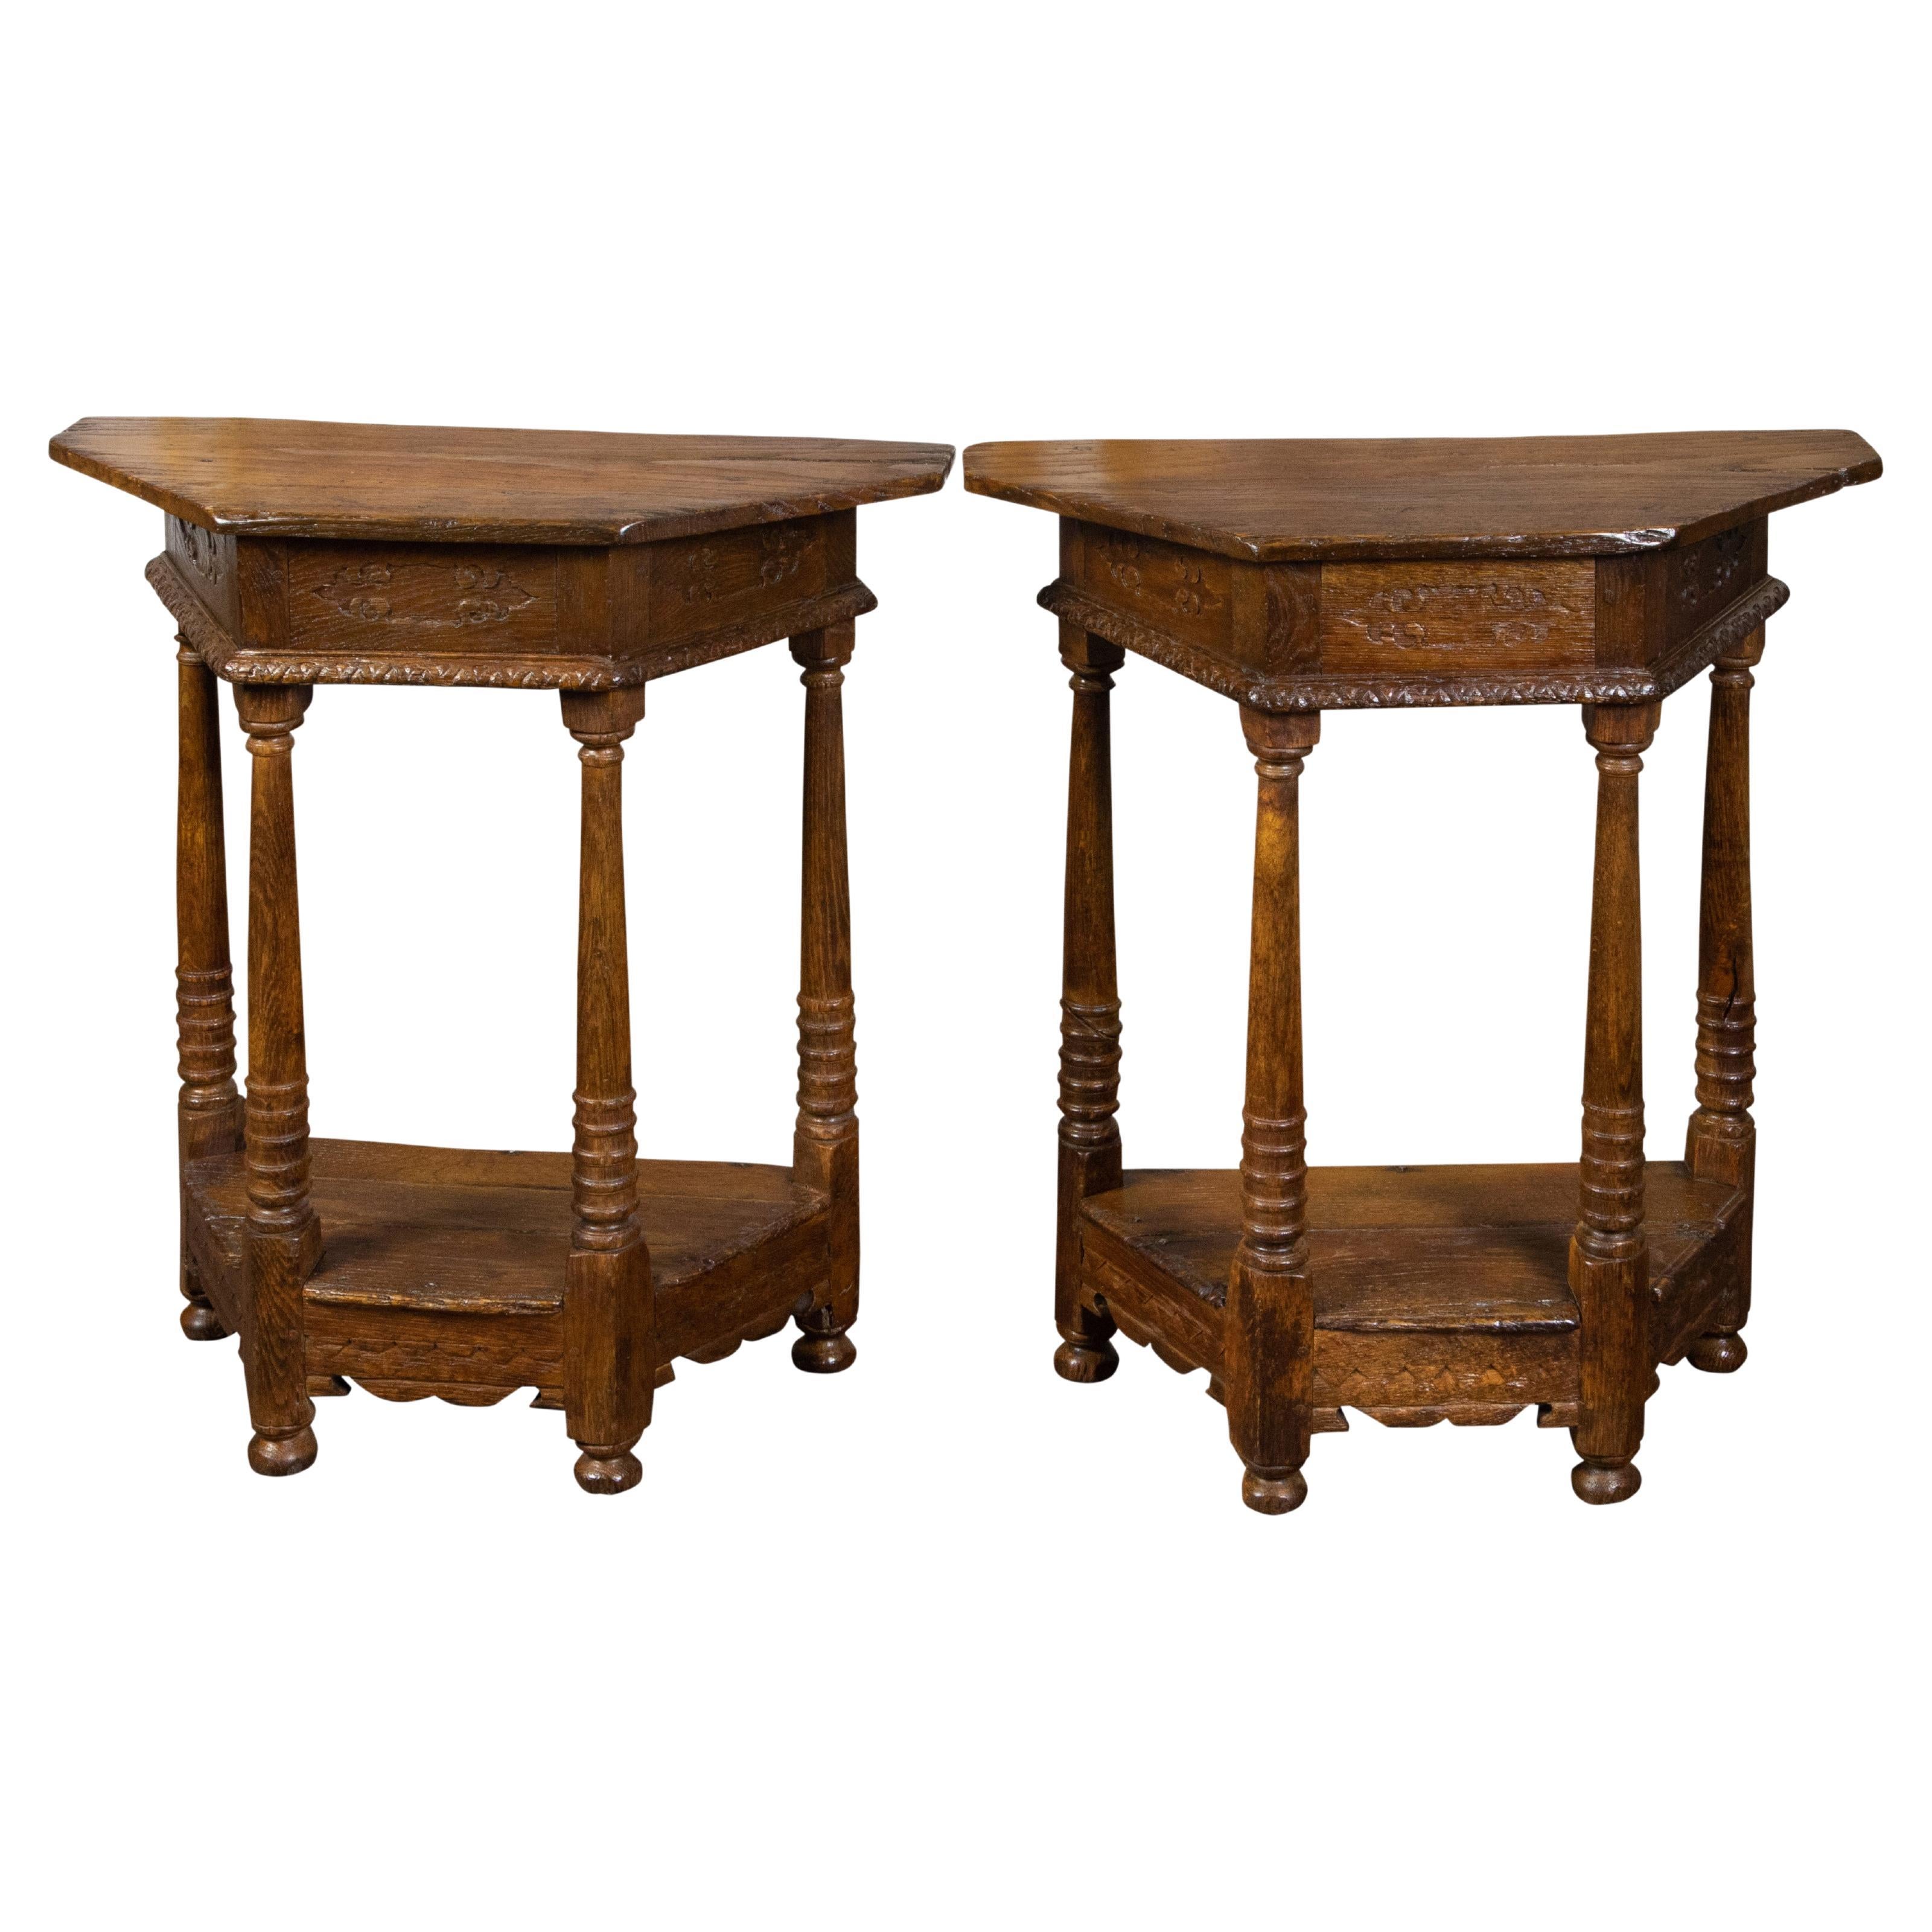 Paar englische geschnitzte Eichenholz-Demilune-Tische des 19. Jahrhunderts mit Säulenbeinen